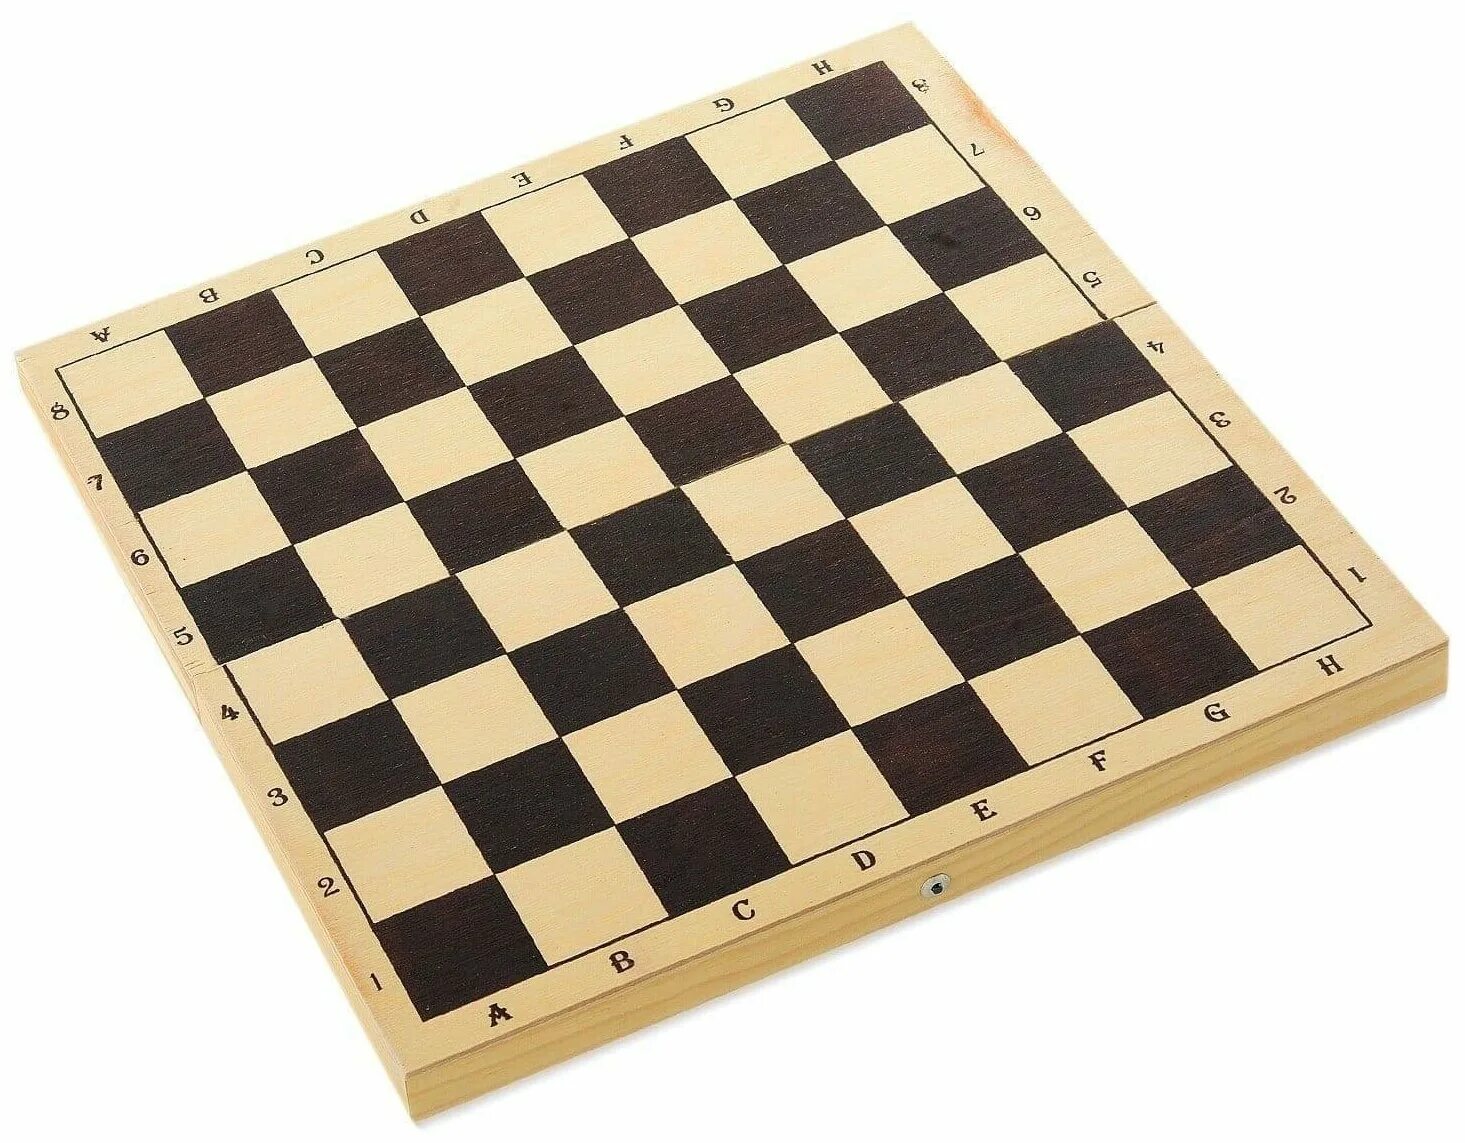 Шахматная доска номера. Доска шахматная демонстрационная магнитная 73х73 в деревянной раме. Shaxmat Shashka doska. Древьная шахматная доска. Доска для шахмат и шашек.